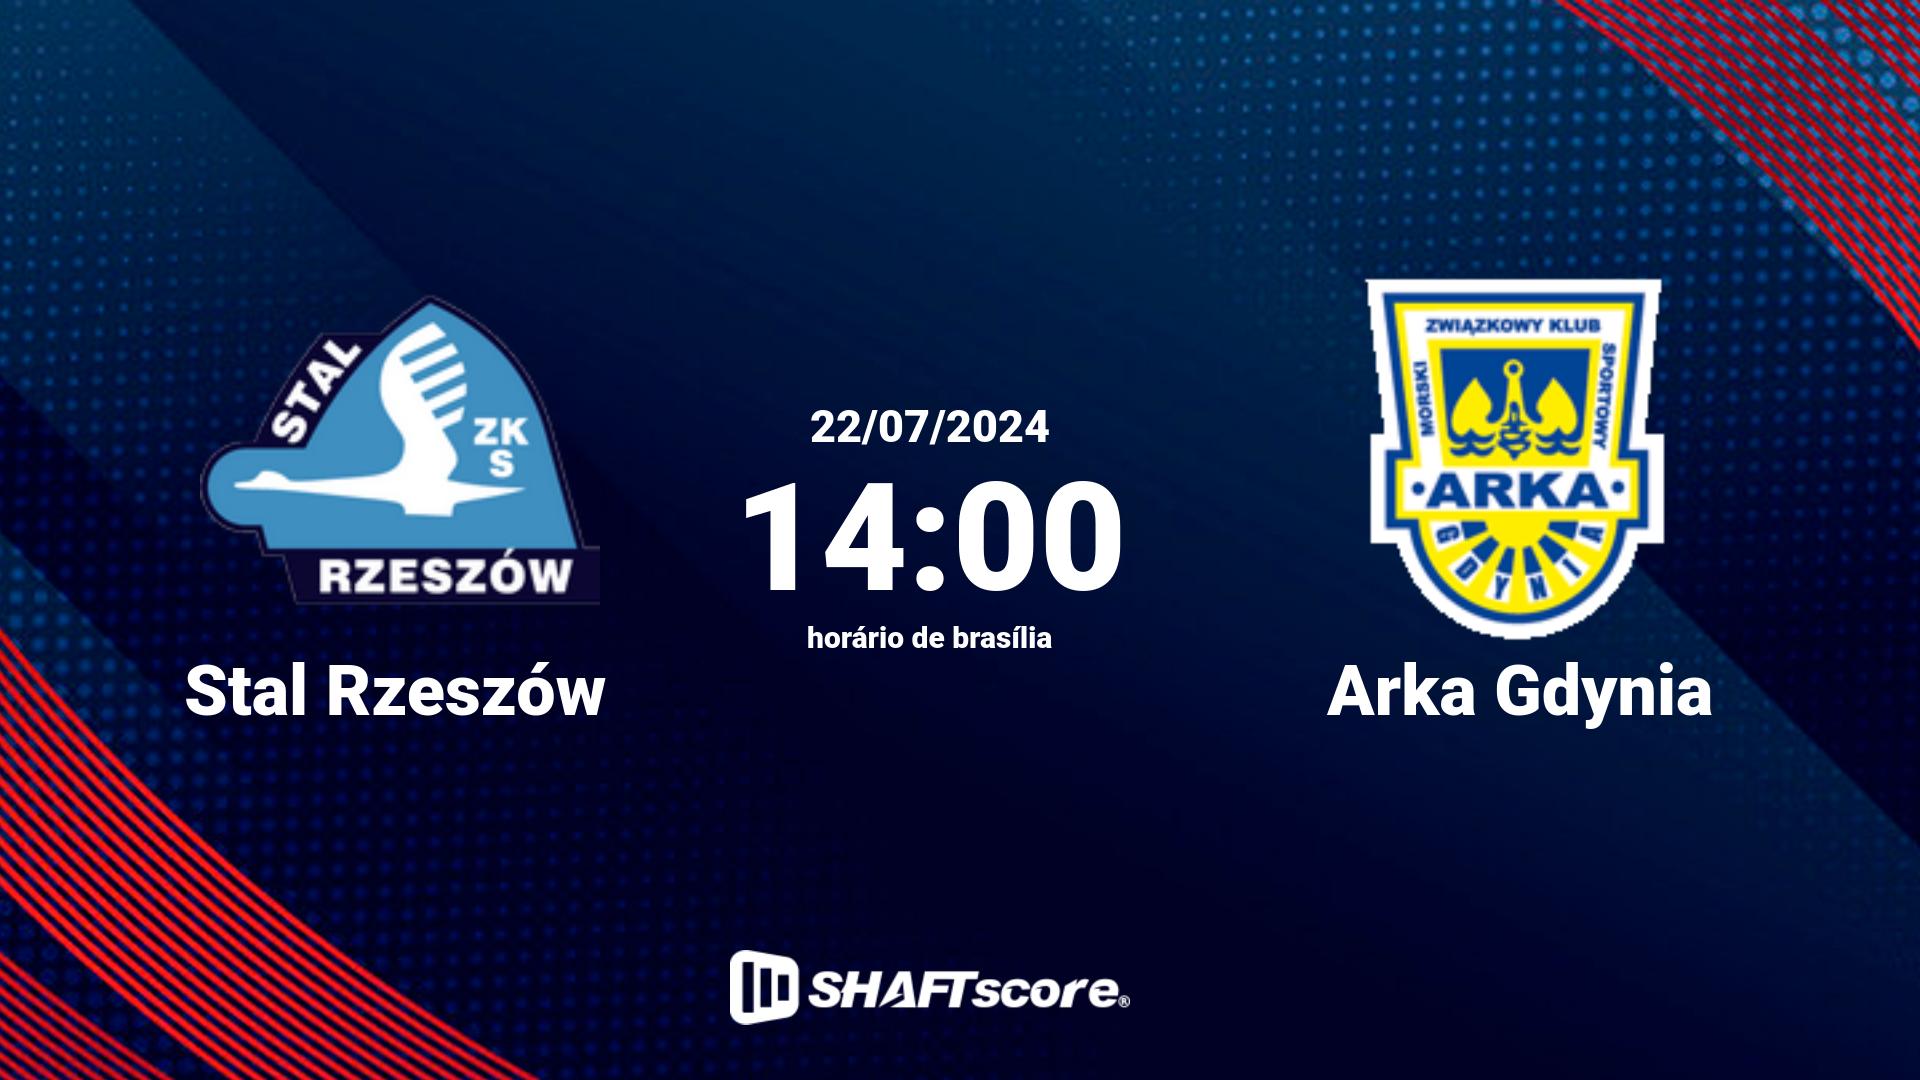 Estatísticas do jogo Stal Rzeszów vs Arka Gdynia 22.07 14:00